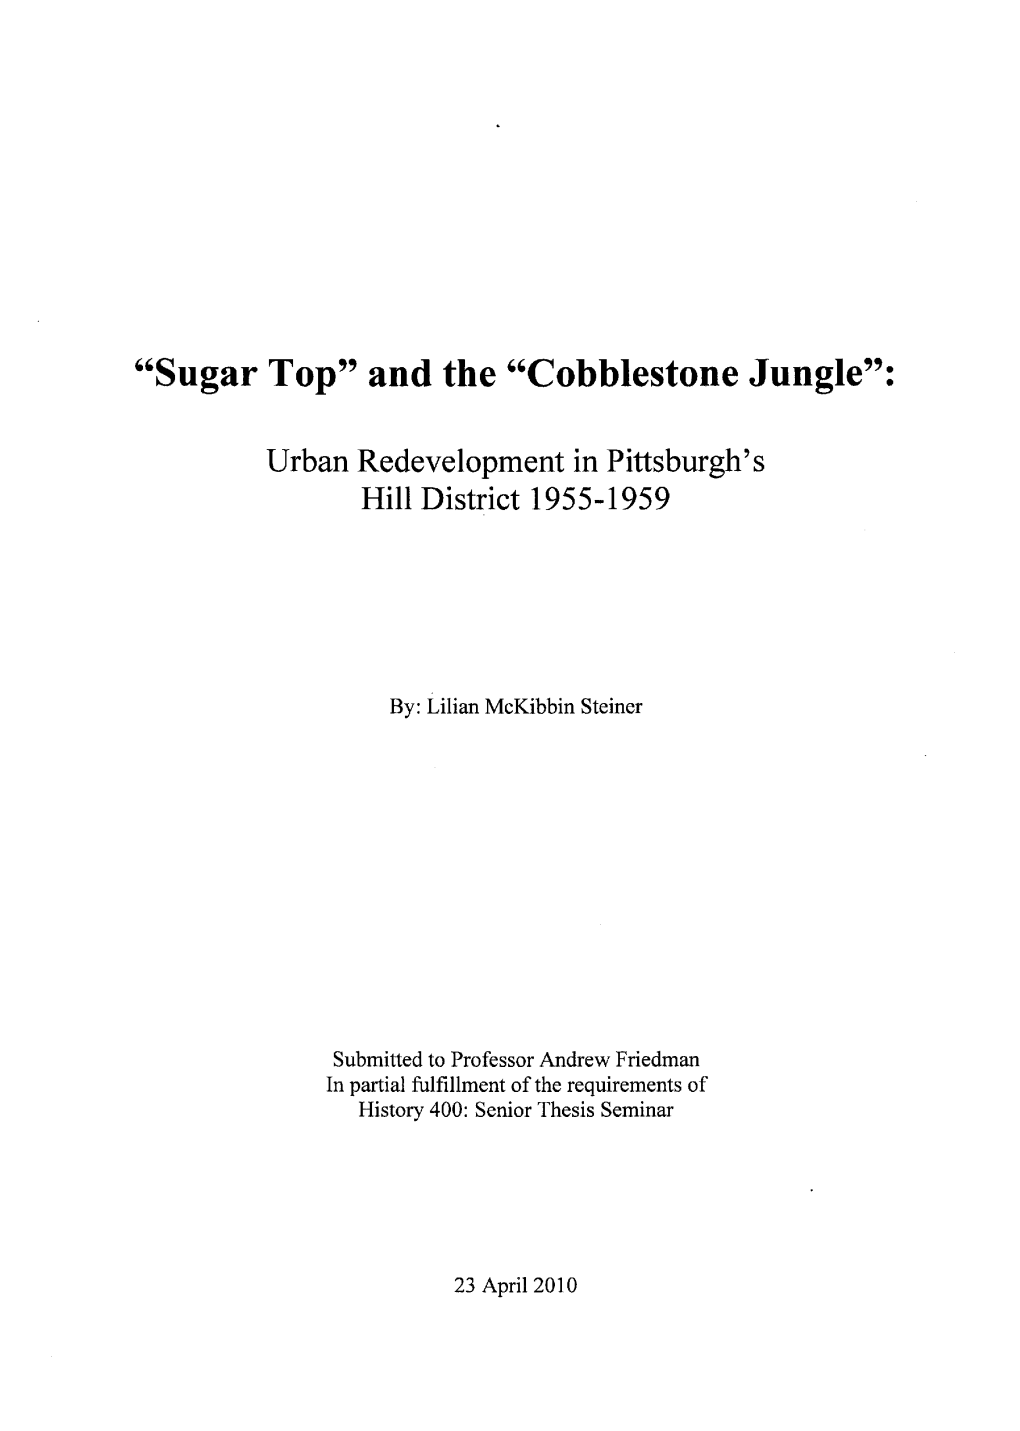 "Sugar Top" and the "Cobblestone Jungle"